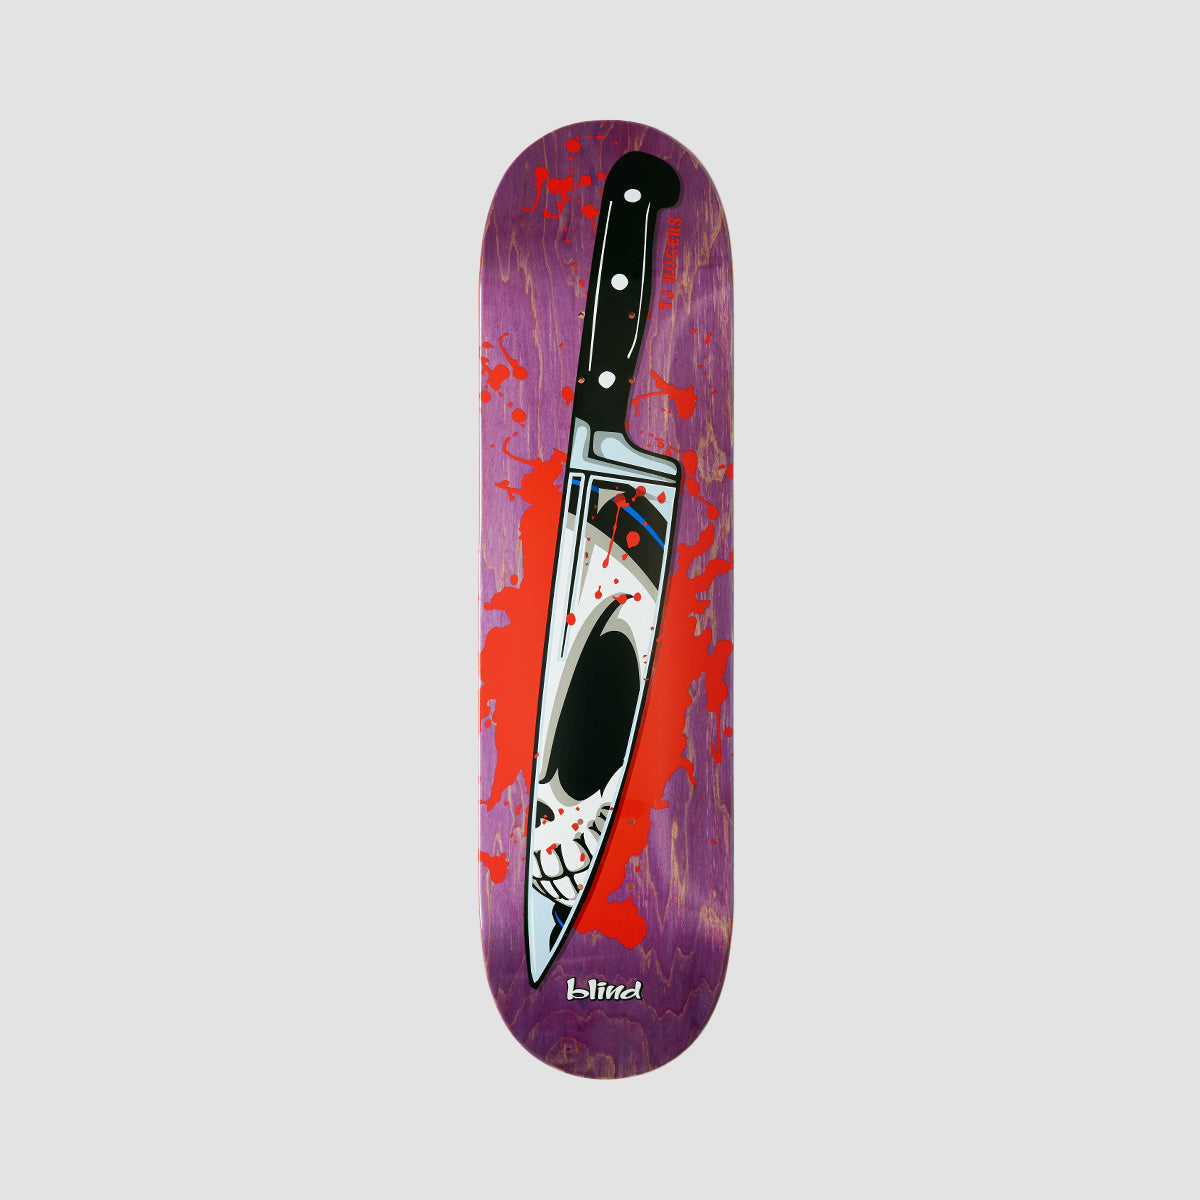 Blind Reaper Knife R7 Skateboard Deck Tj Rogers/Purple - 8.25"